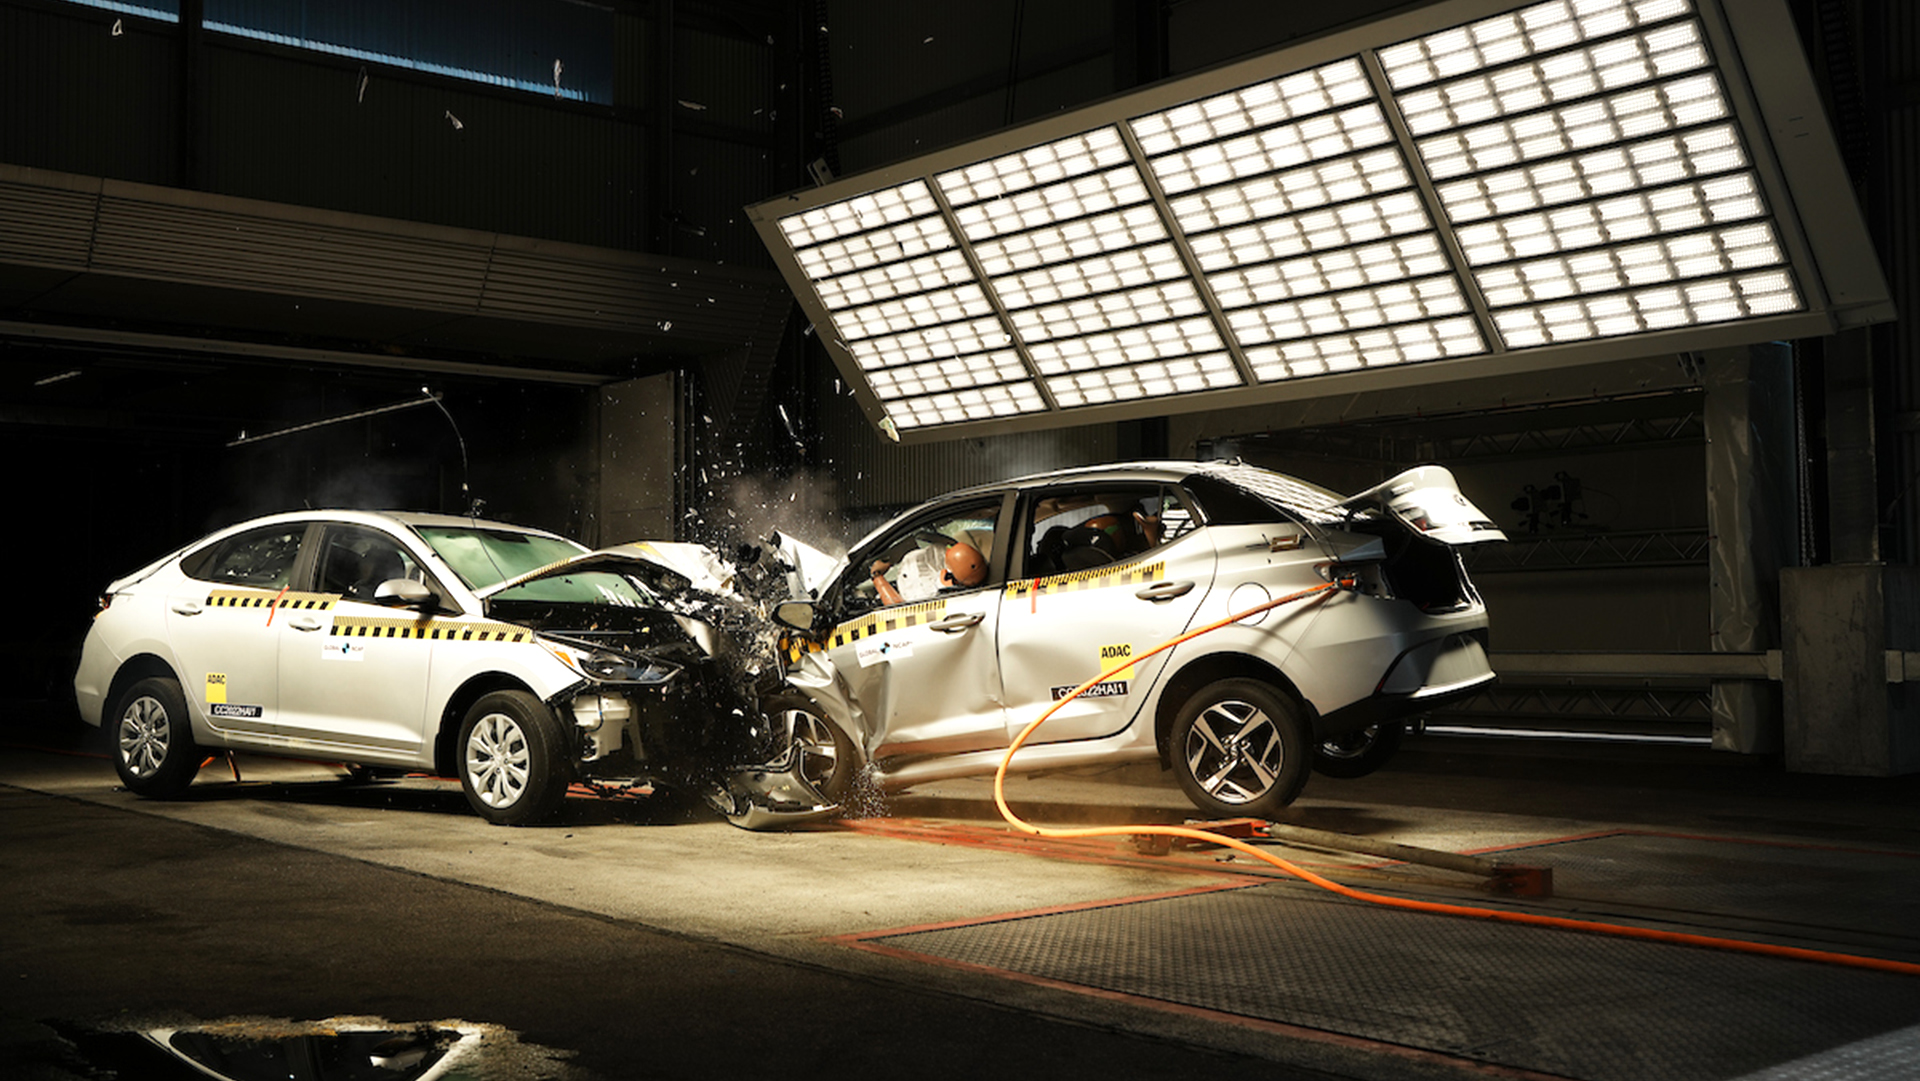 Auto contra auto: un crash test dejó en evidencia cuál es el estándar de seguridad del mercado latinoamericano